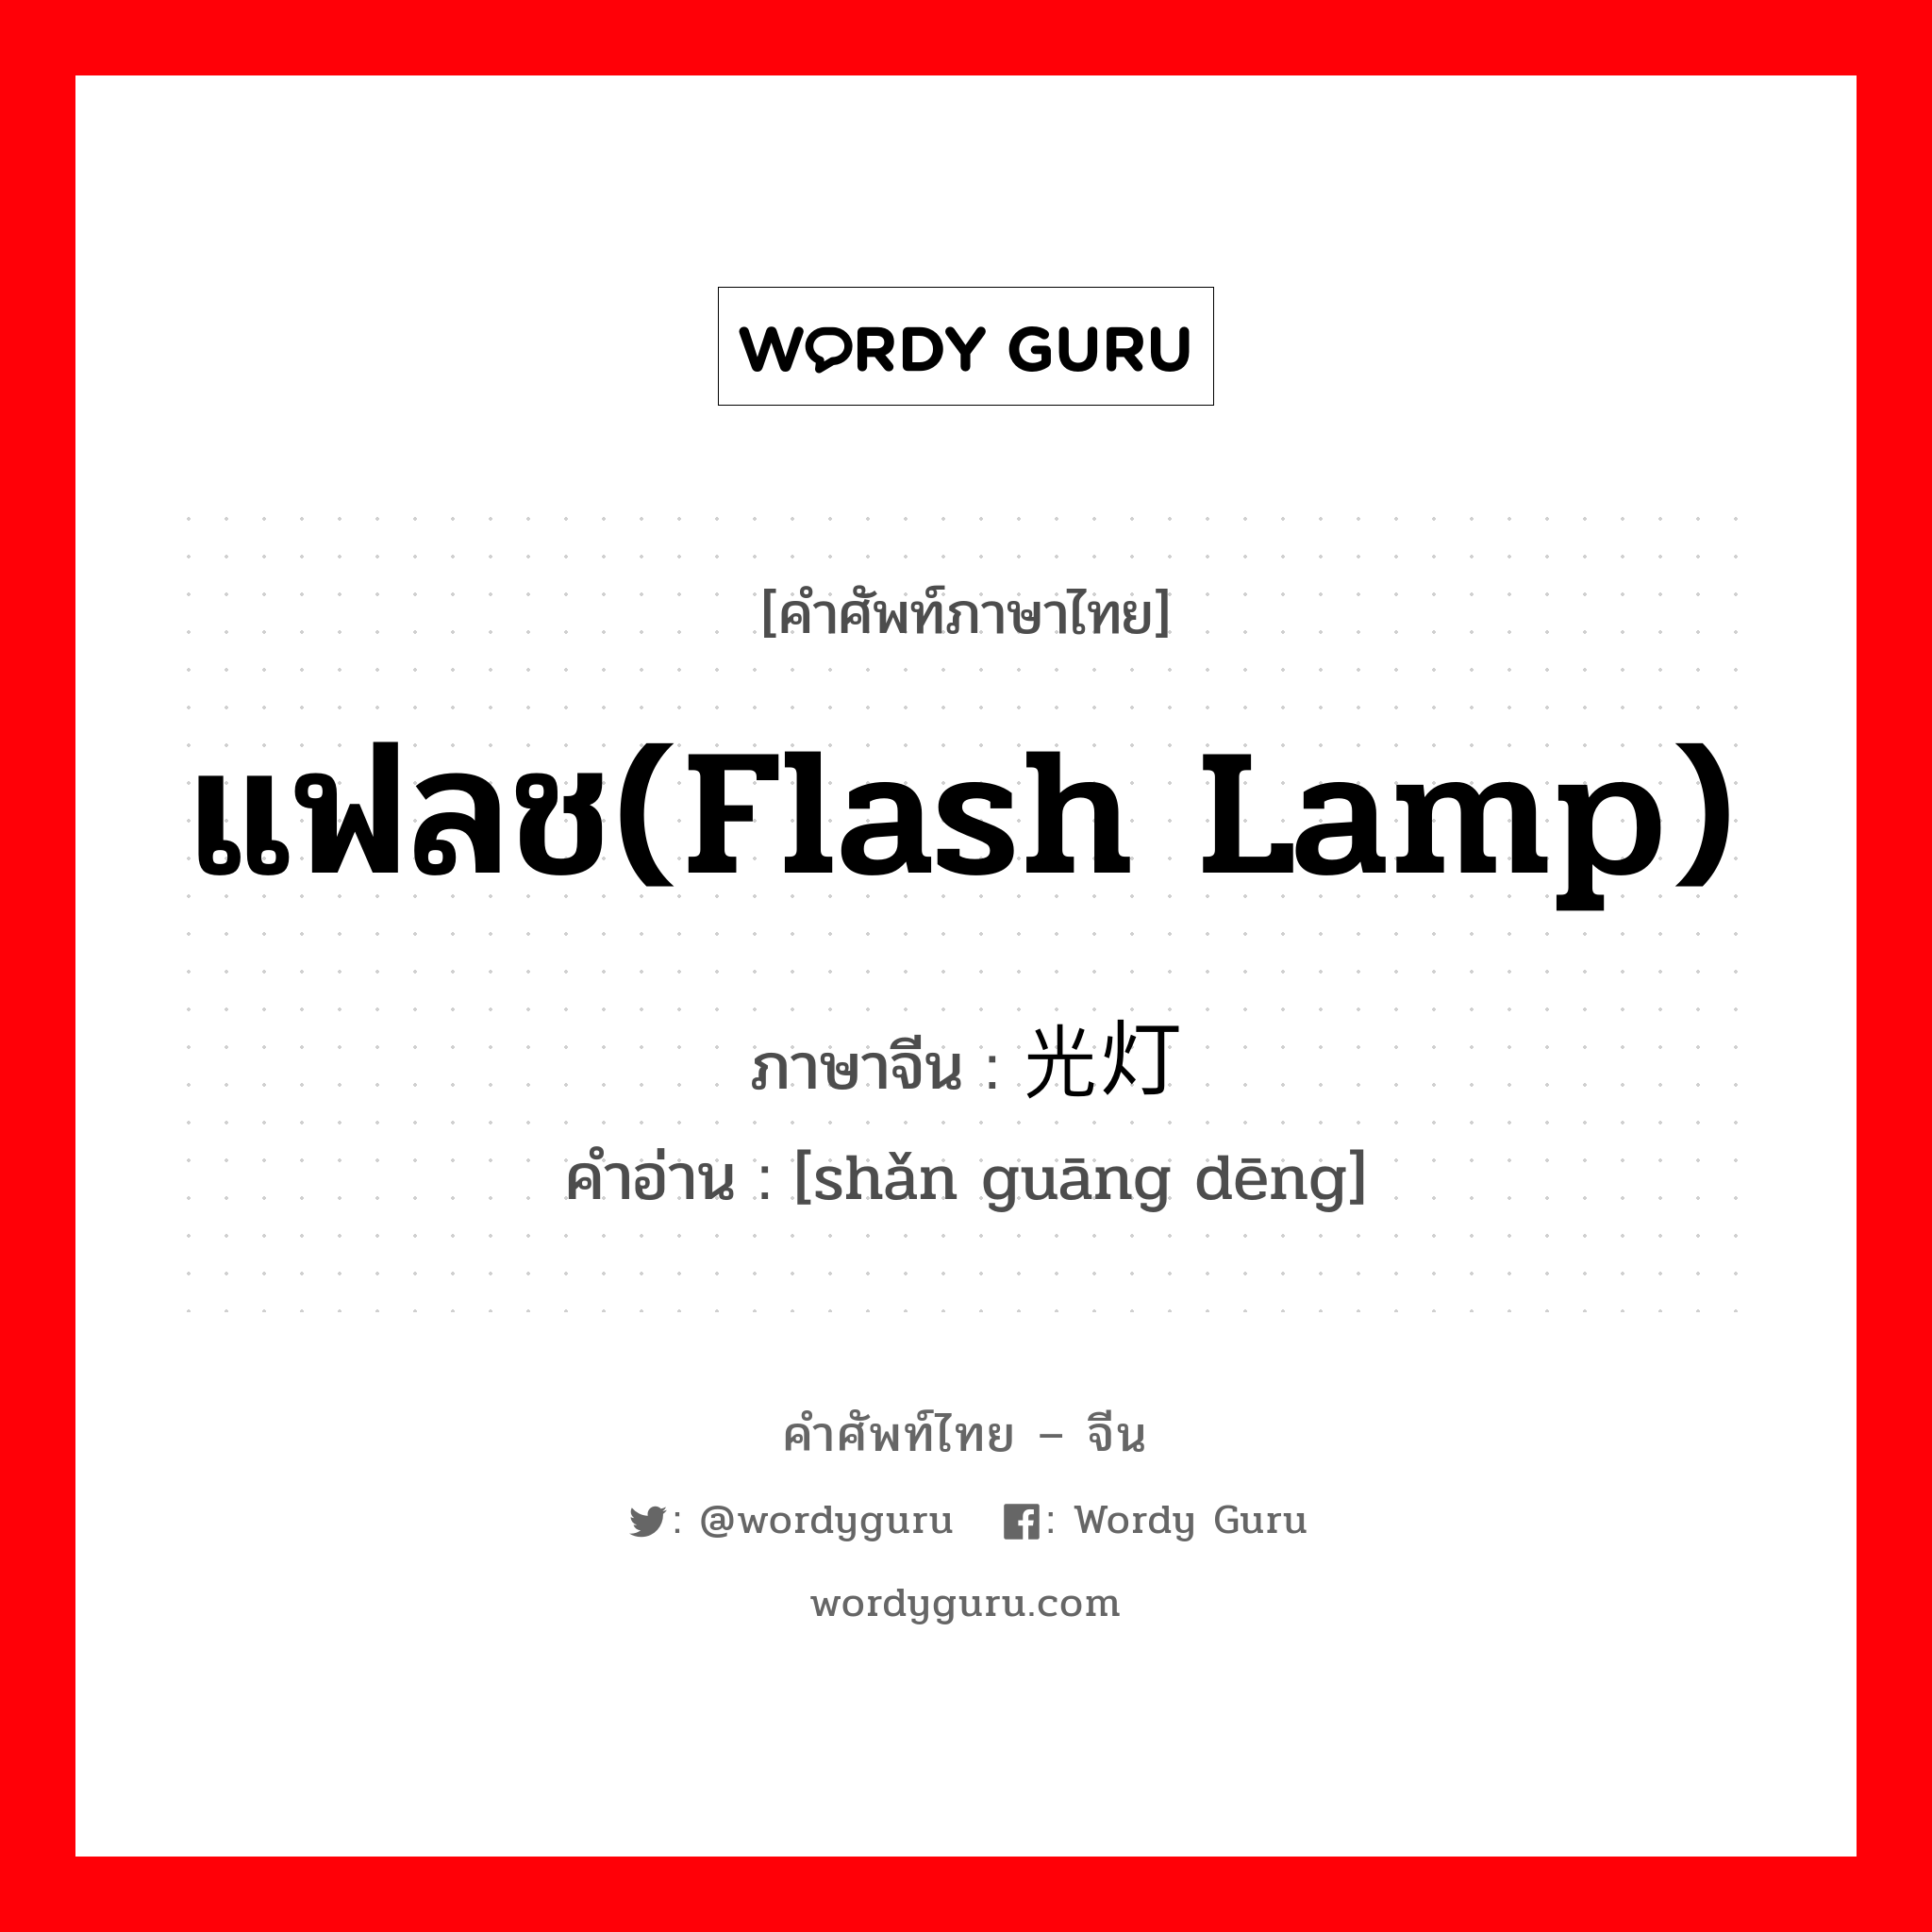 แฟลช(flash lamp) ภาษาจีนคืออะไร, คำศัพท์ภาษาไทย - จีน แฟลช(flash lamp) ภาษาจีน 闪光灯 คำอ่าน [shǎn guāng dēng]